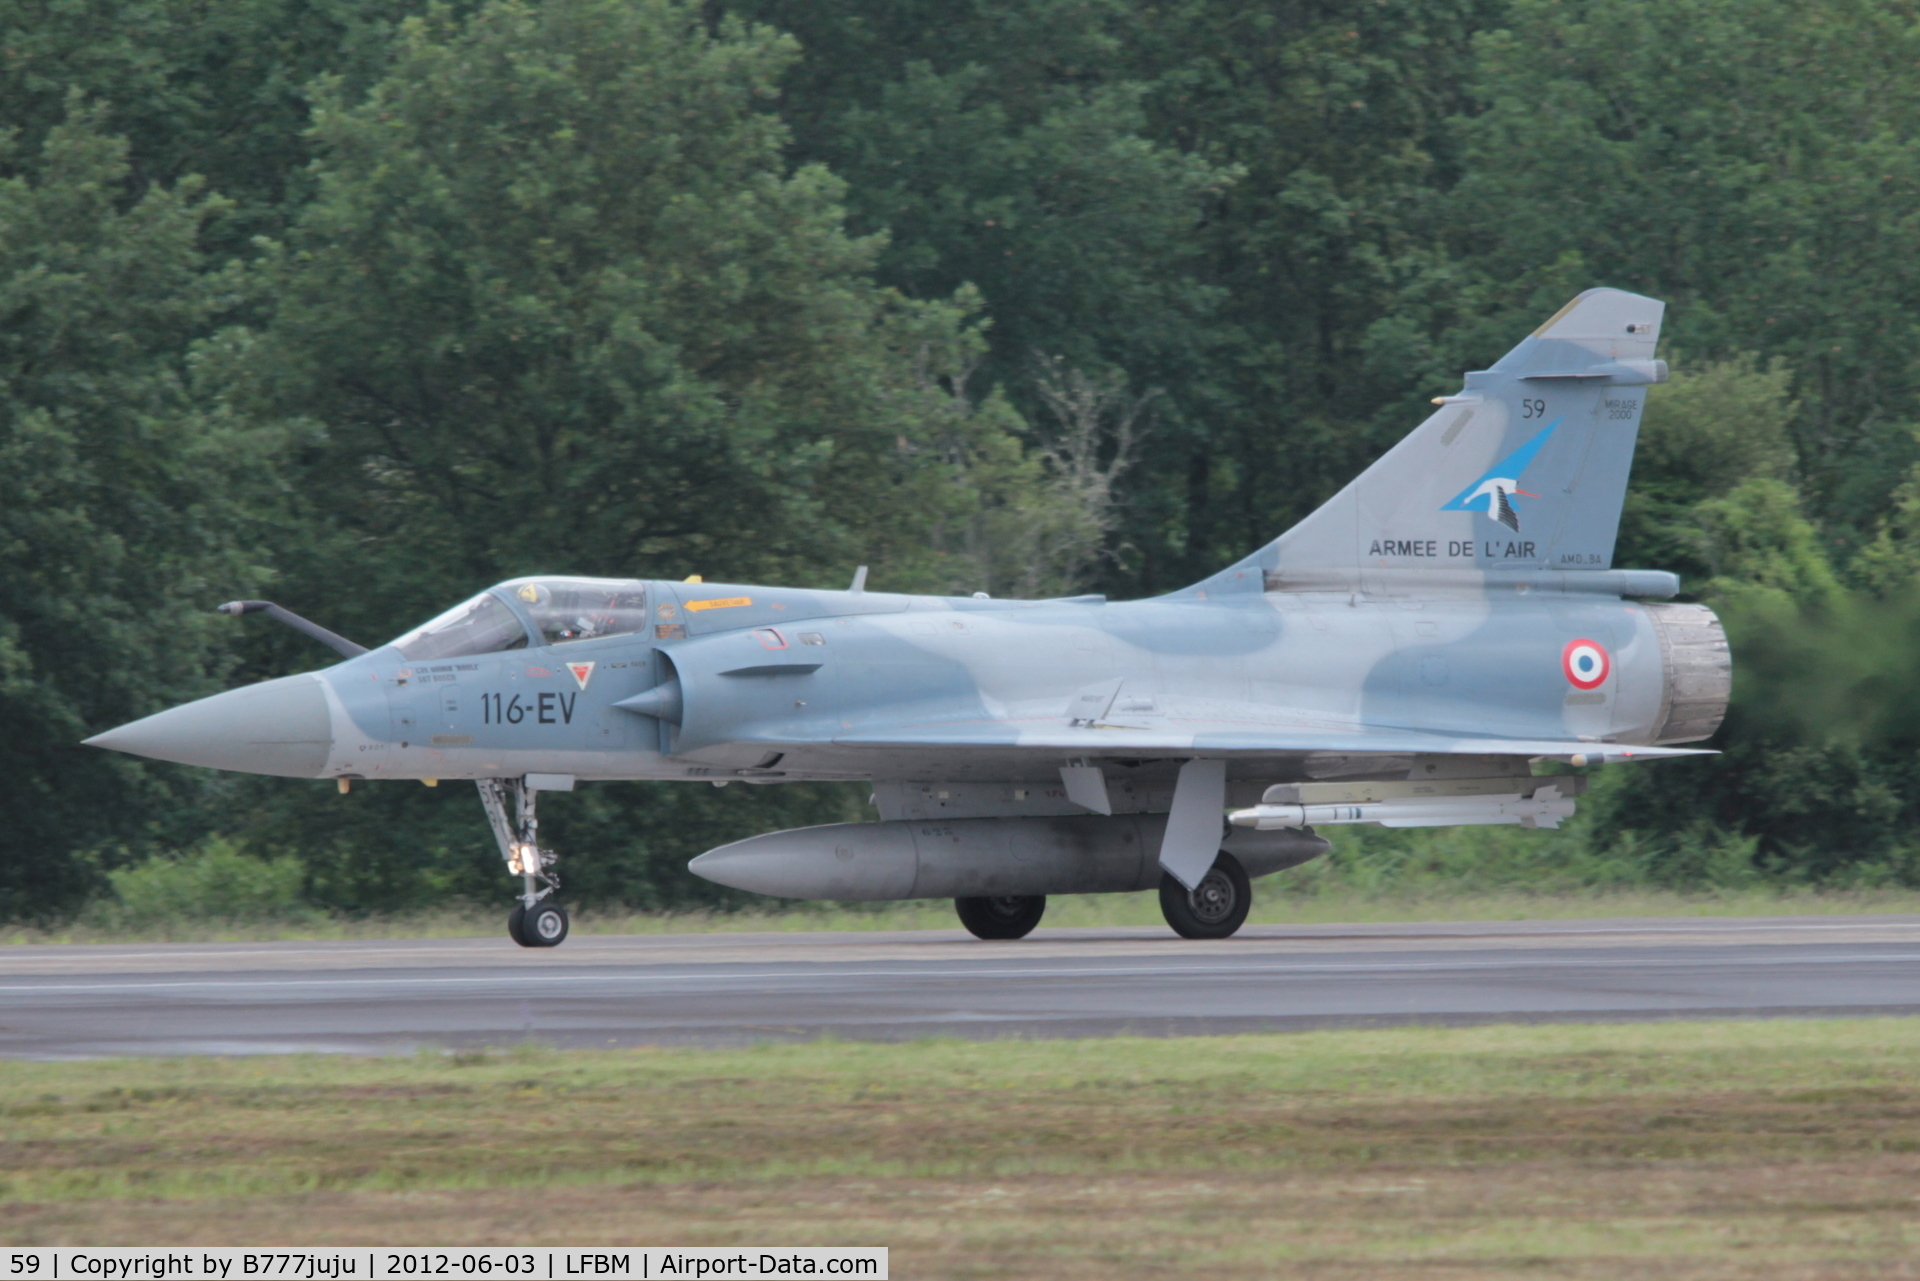 59, Dassault Mirage 2000-5F C/N 266, with new code 116-EV